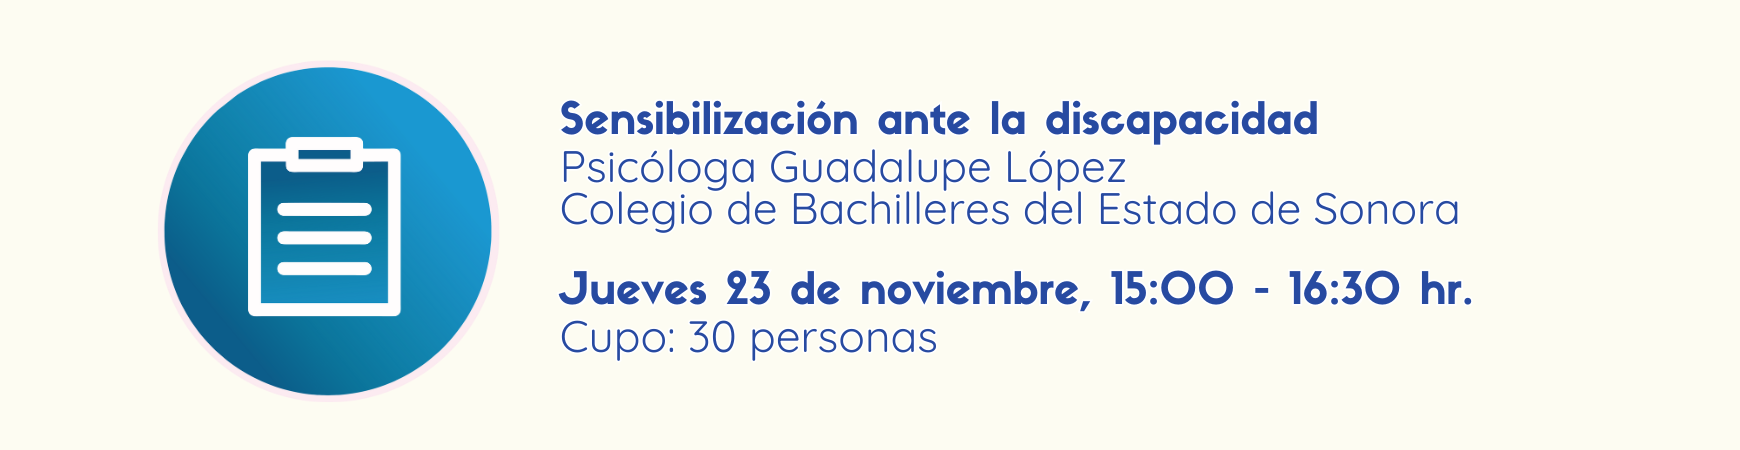 Imagen para registros al taller: Sensibilización ante la discapacidad, jueves 23 de noviembre de 3:00 a 4:30pm